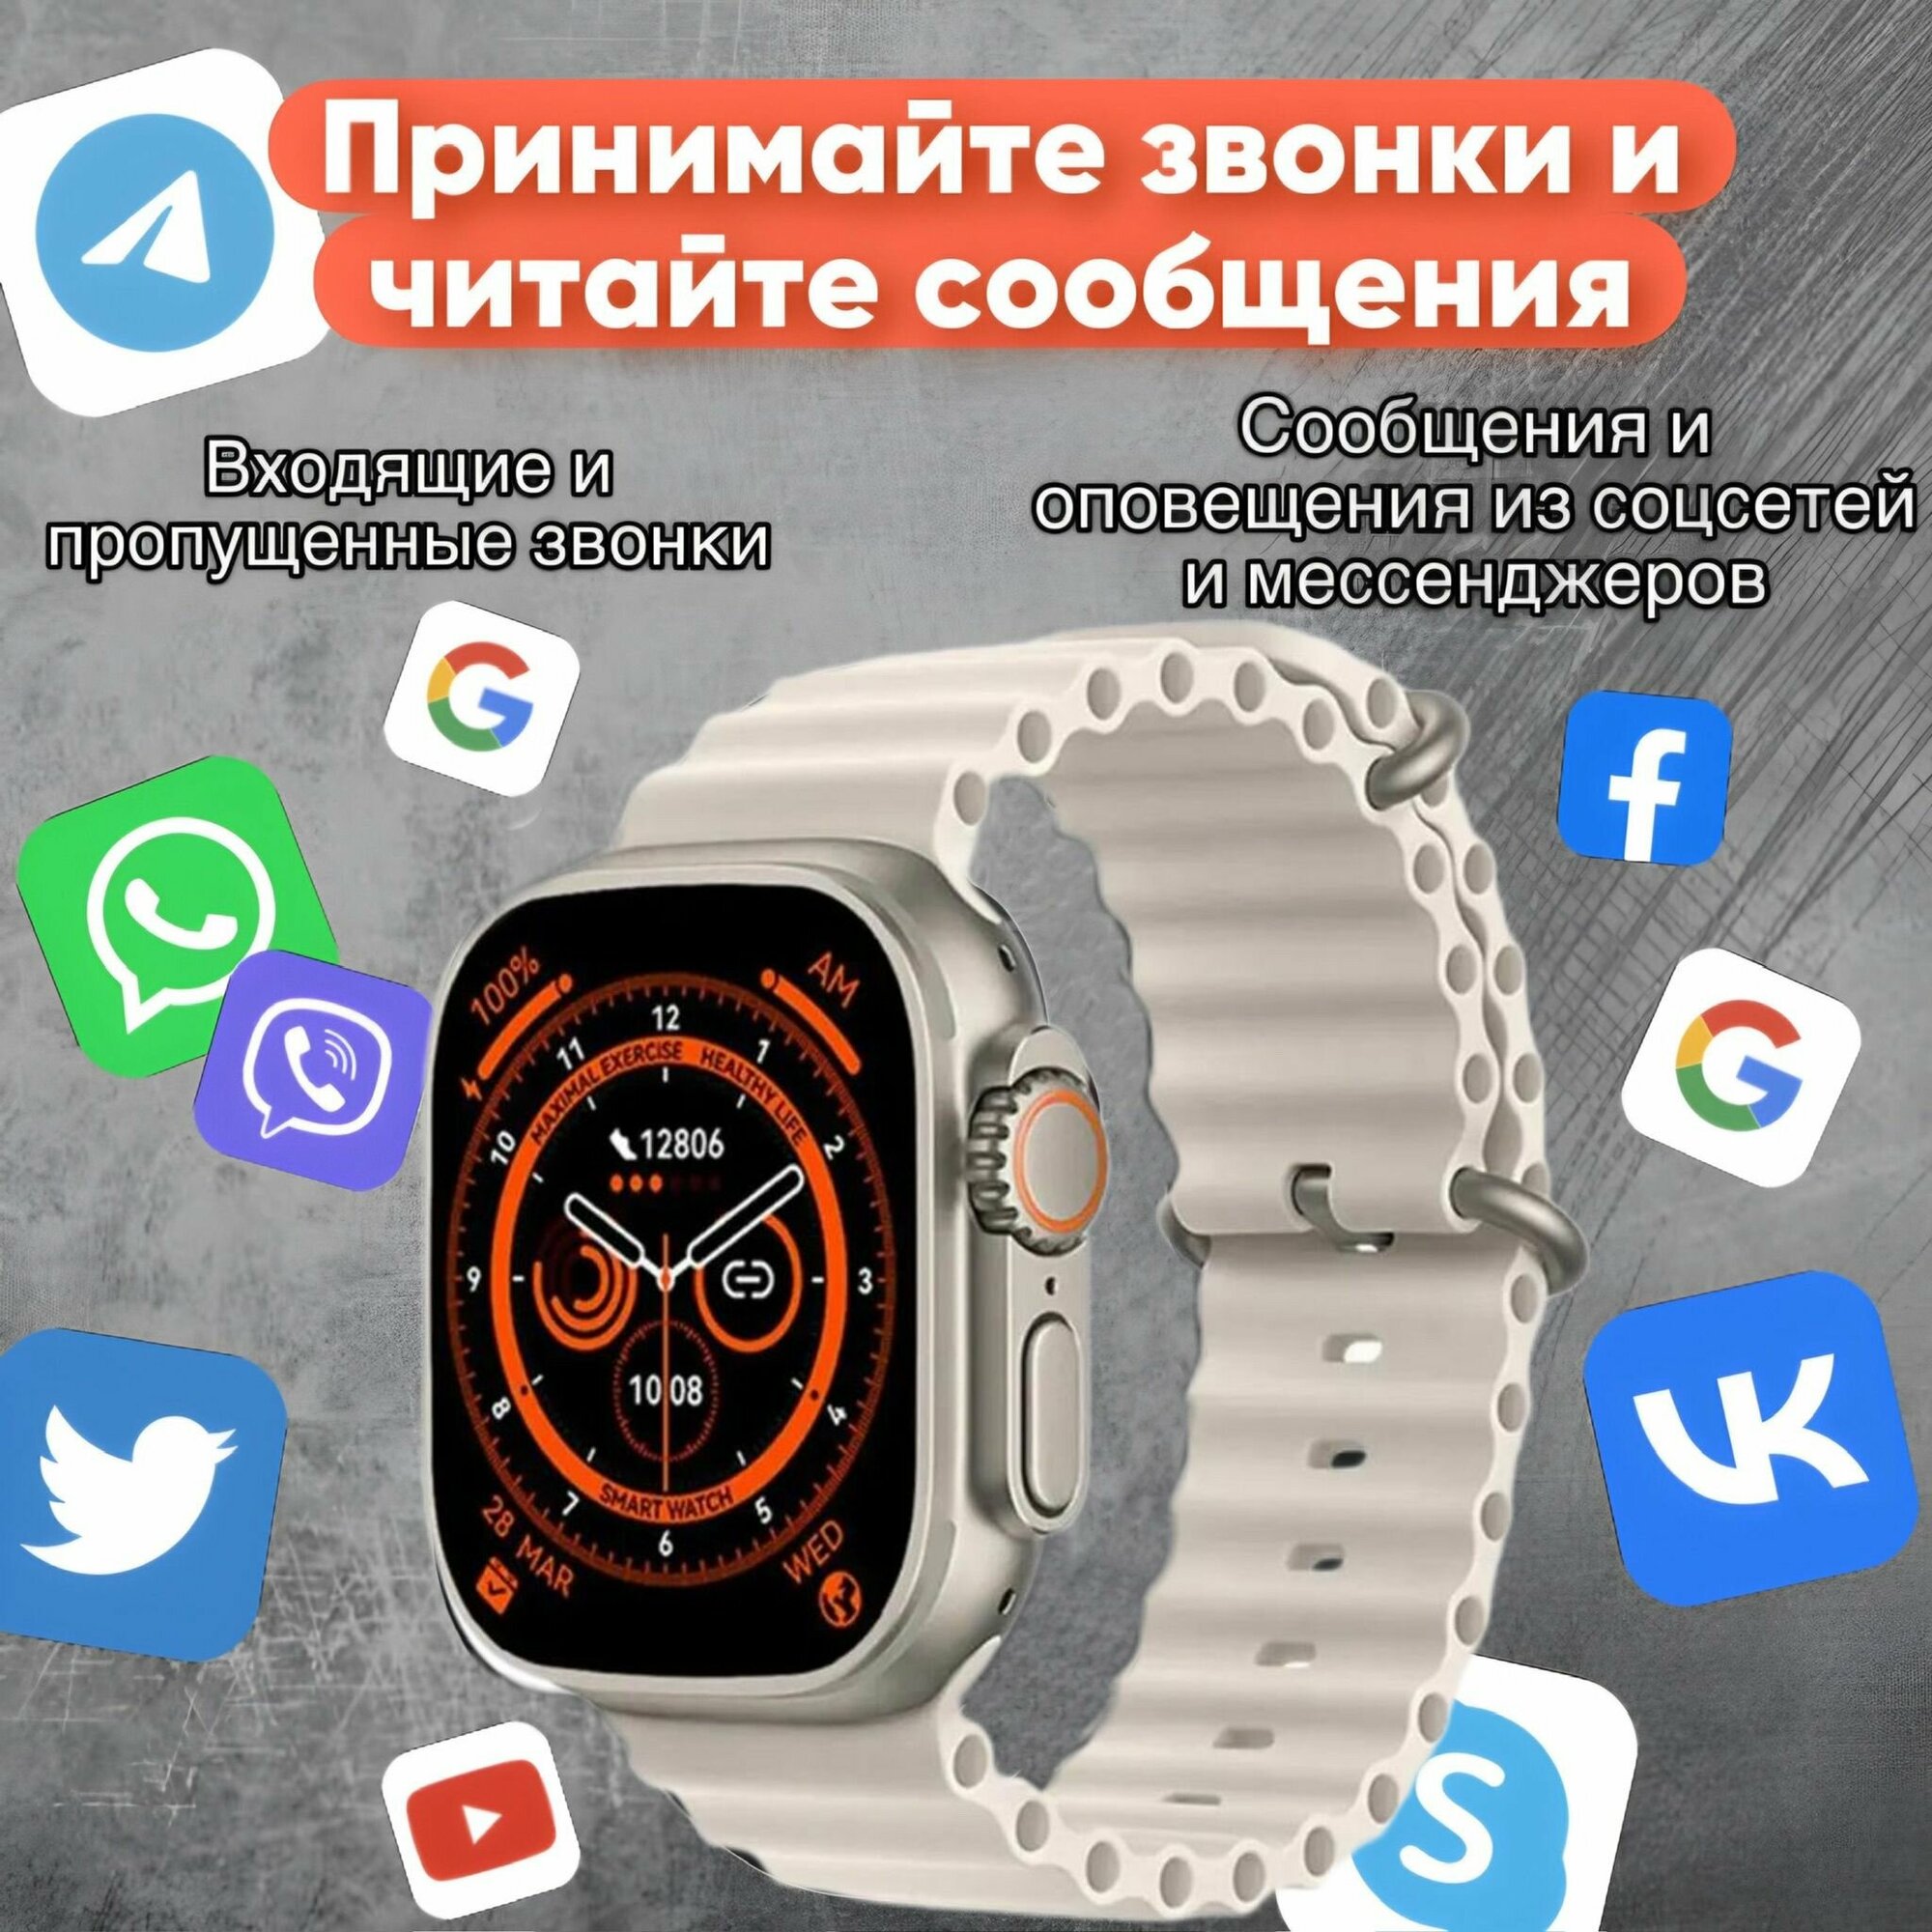 Smart Watch HK9 Ultra 2 / Смарт-часы HK9 Ultra 2 /мужские, женские /Смарт вотч, c сенсорным экраном/ Электронные, наручные/Фитнес браслет для IOS, Android /Шагомер, Bluetooth/ gps, спортивные, унисекс